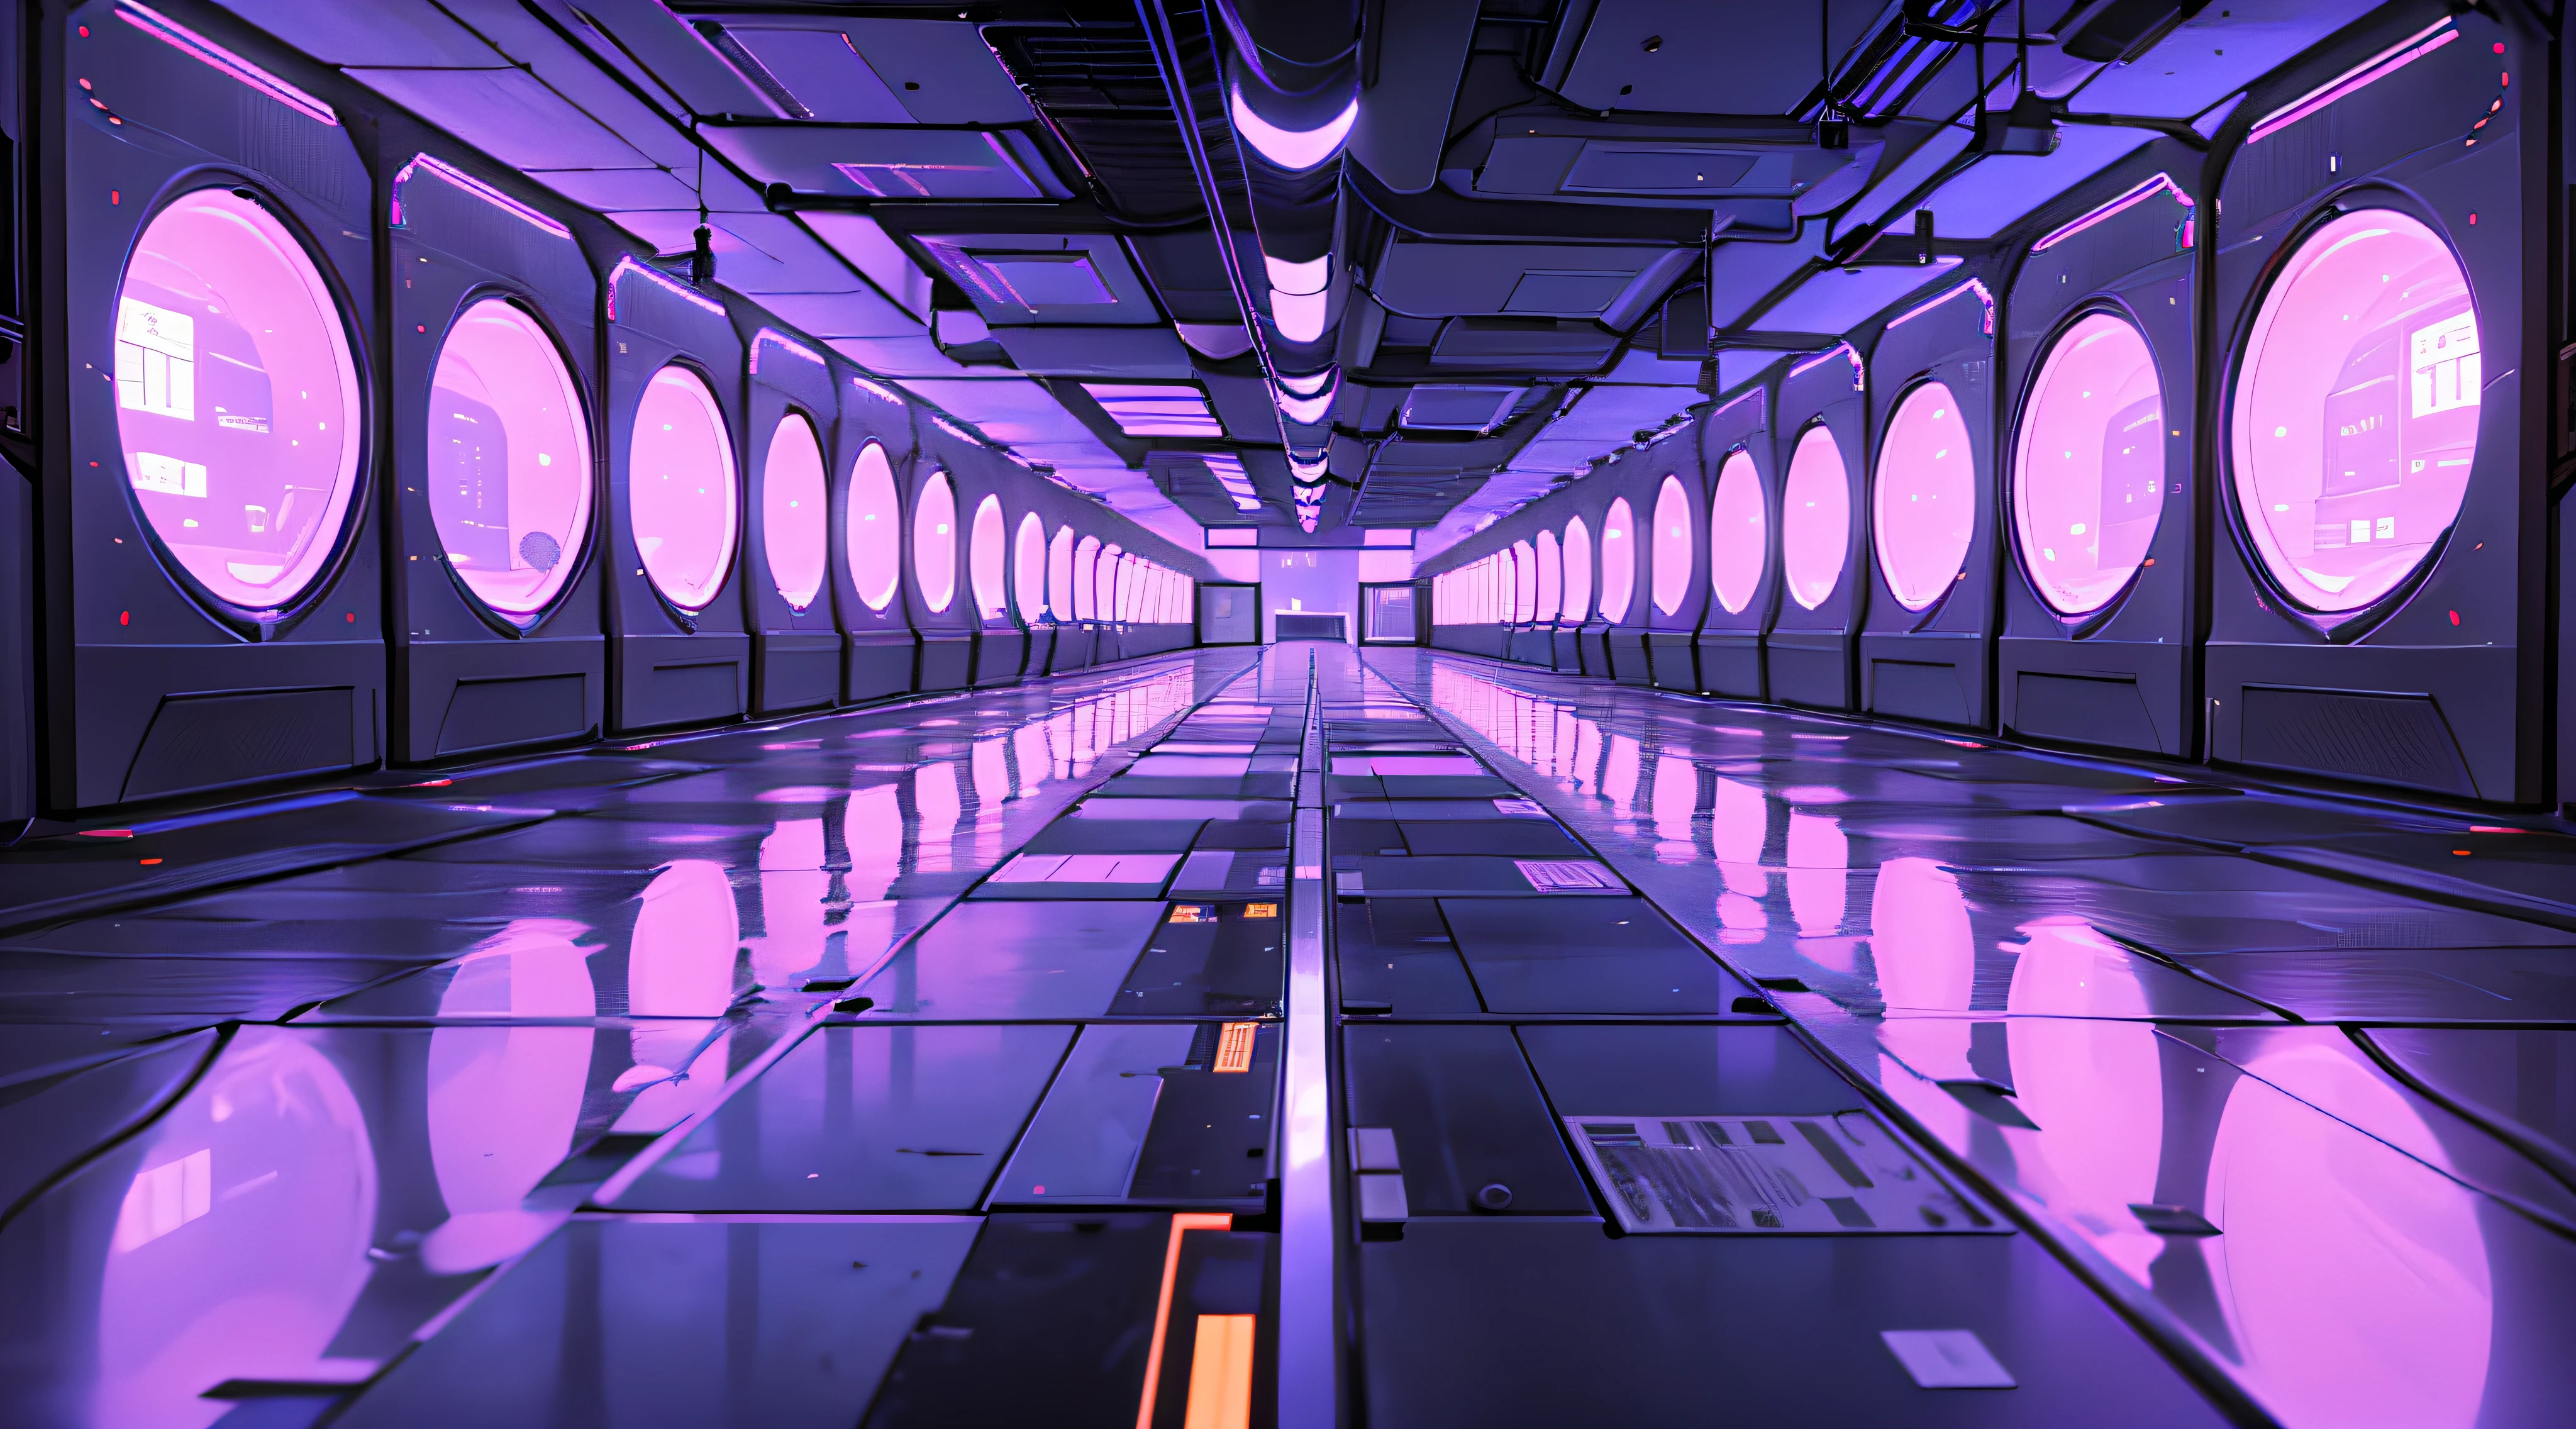 データやコンピュータの画面が並ぶ薄暗い廊下, 背景はデータサーバールーム, メインフレームへのハッキング, サイバースペース, 現実的なデータセンター, 3840x2160, 3840×2160, 宇宙船の廊下の背景, サイバーアーキテクチャ, シュールなサイバースペース, 詳細データセンター --auto --s2